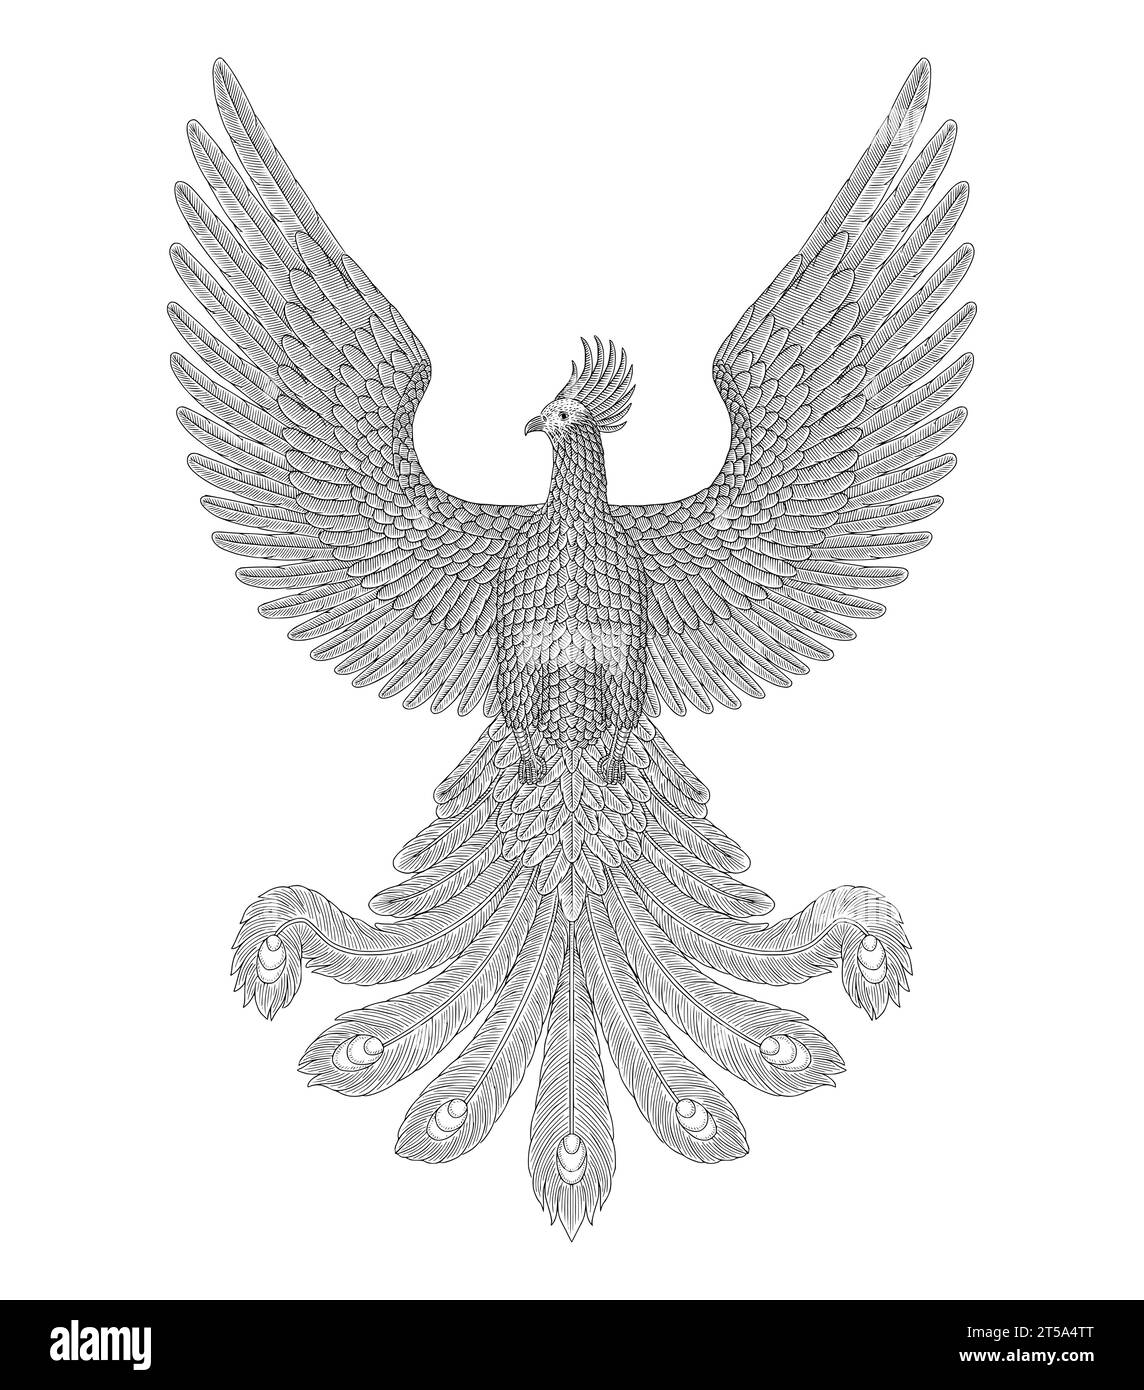 Phoenix oiseau, gravure vintage dessin illustration de stye Illustration de Vecteur